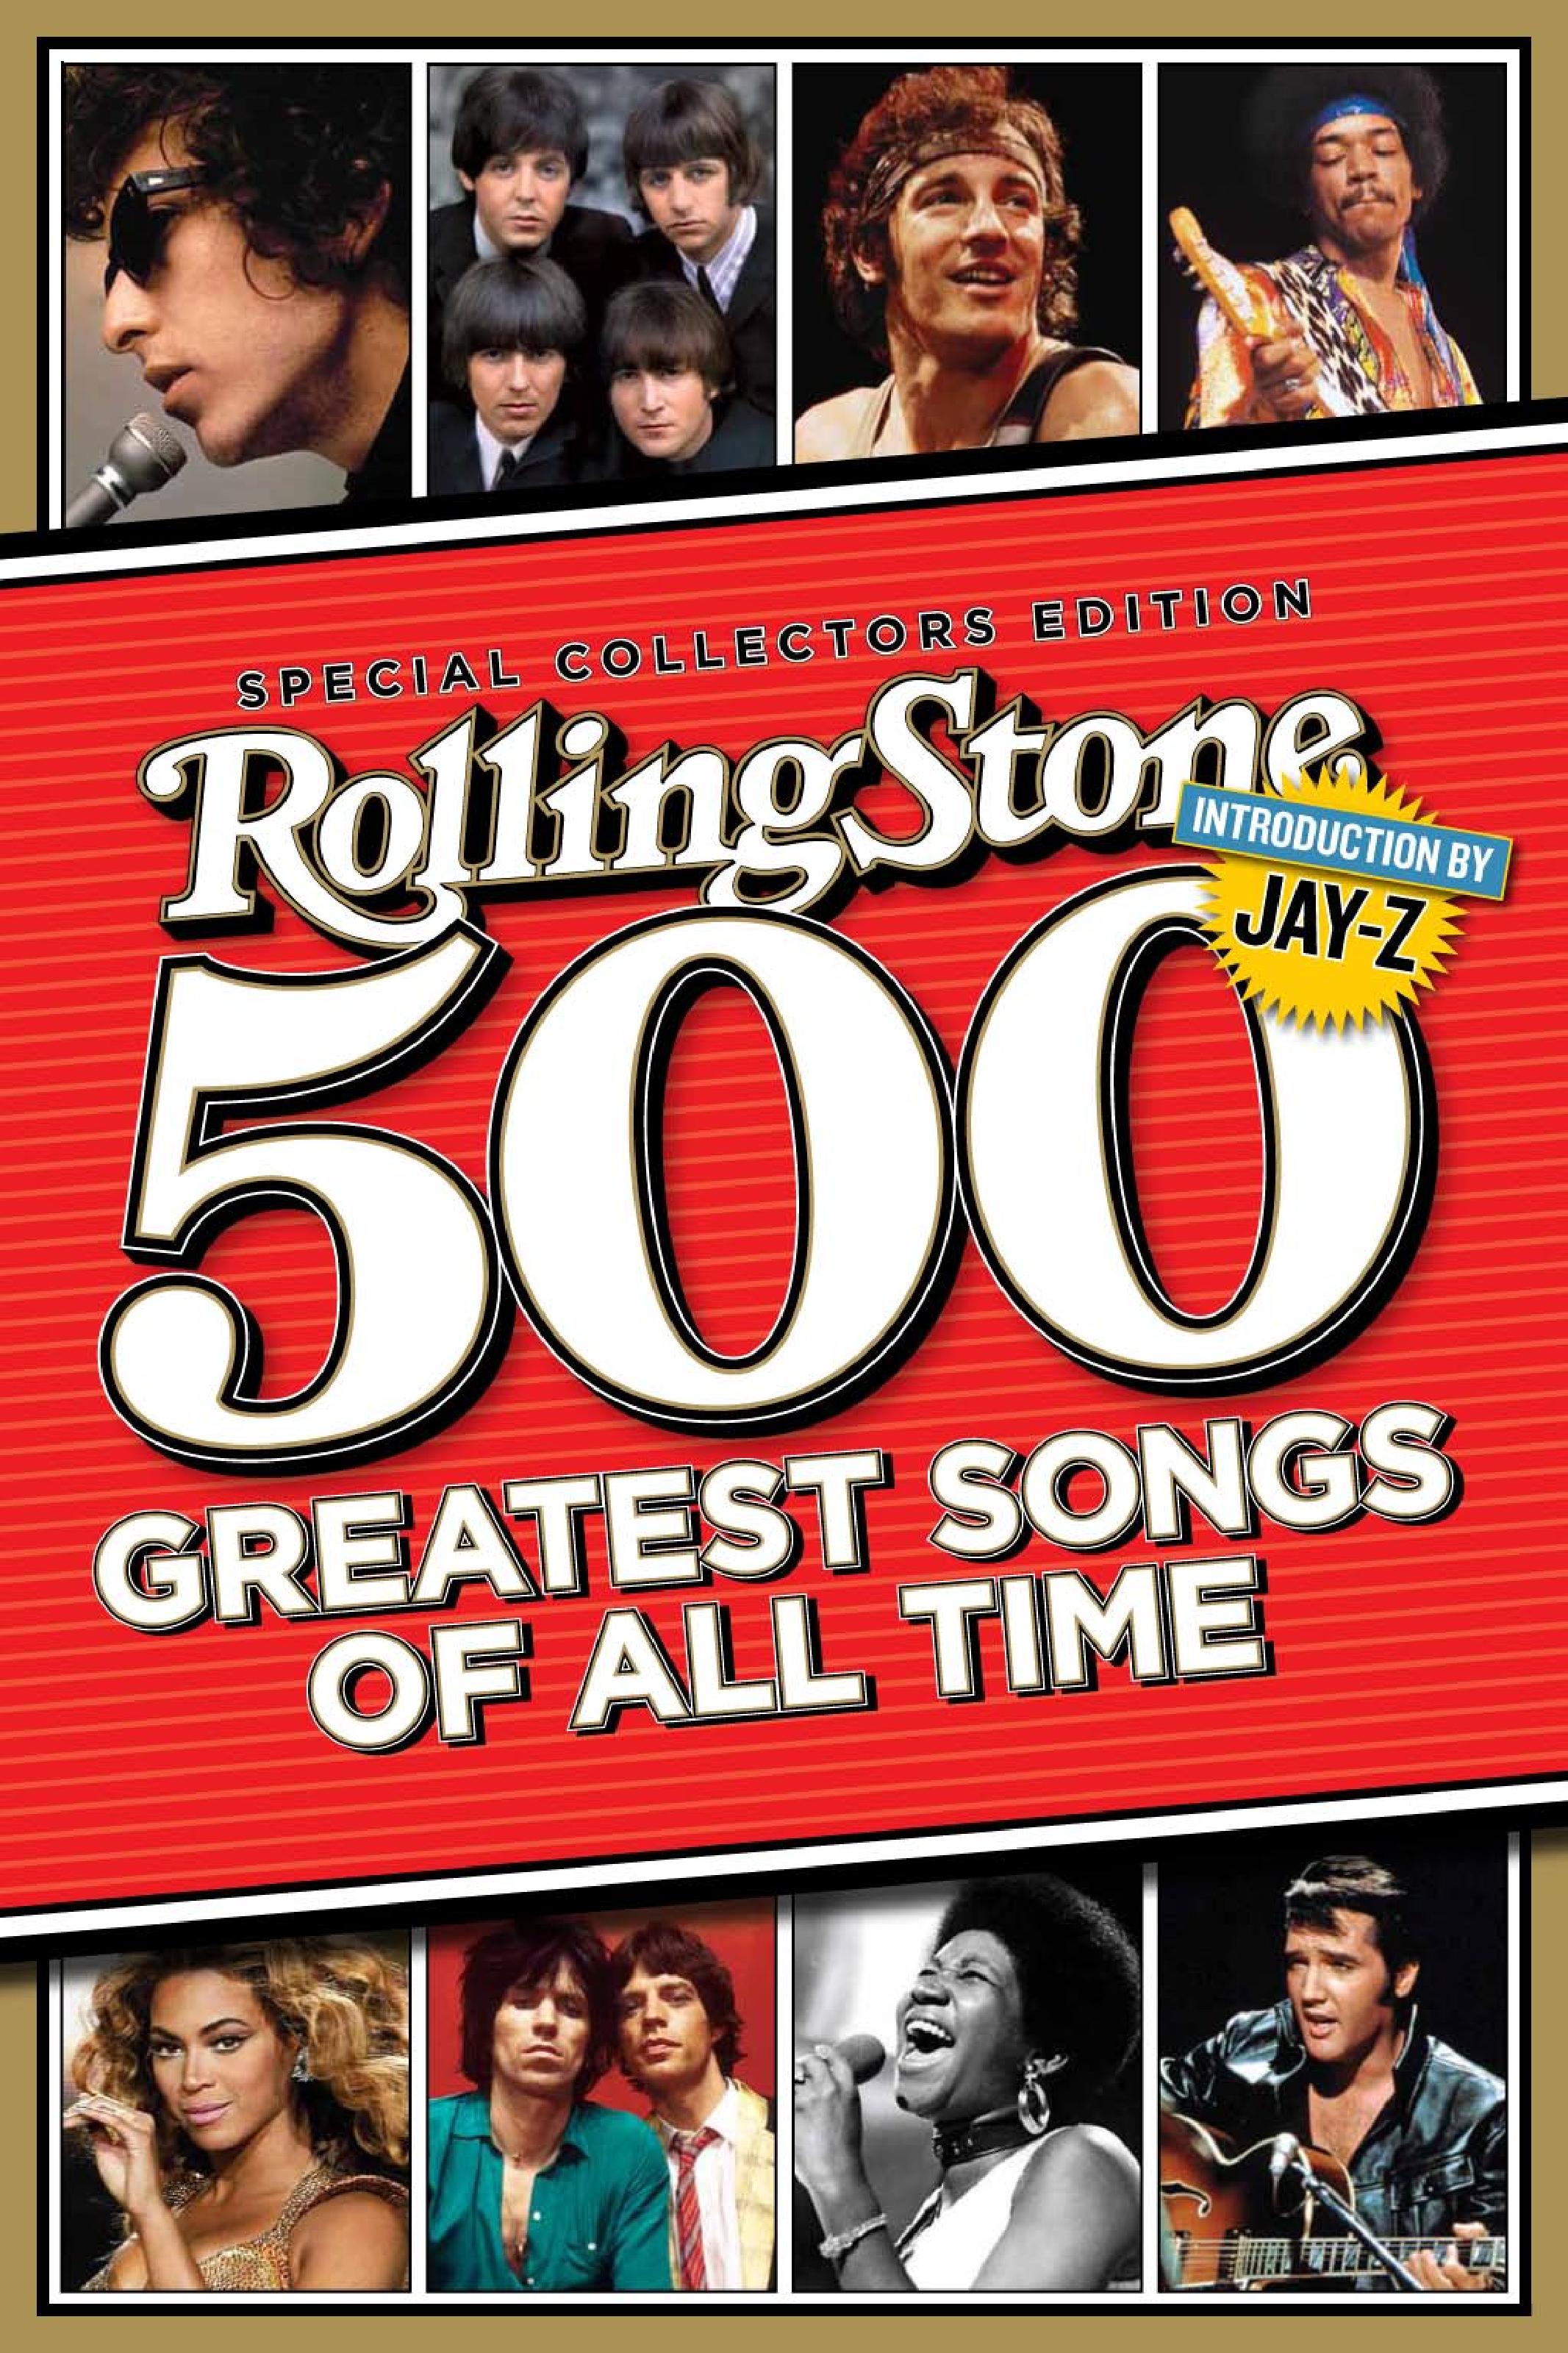 Лучшие песни всех времен. Rolling Stone 500. 500 Greatest Songs of all time. 500 Песен всех времён по версии журнала Rolling Stone. Лучшие песни 70-х.